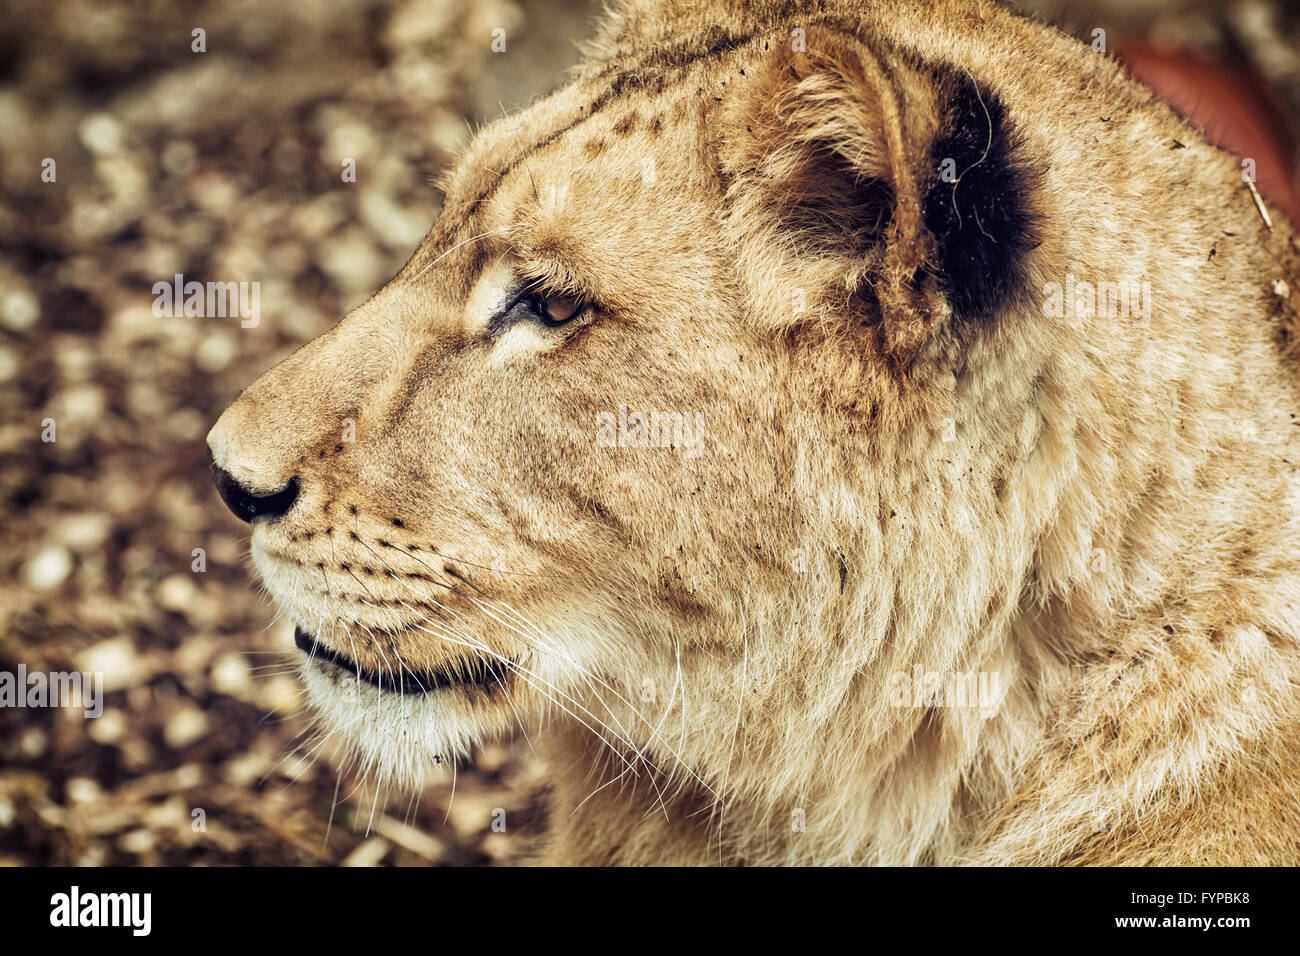 Portrait d'un Barbary lion - Panthera leo leo. Portrait d'animaux. Lionne libre. Lion de l'Atlas. Espèces en danger critique d'extinction. Side Banque D'Images